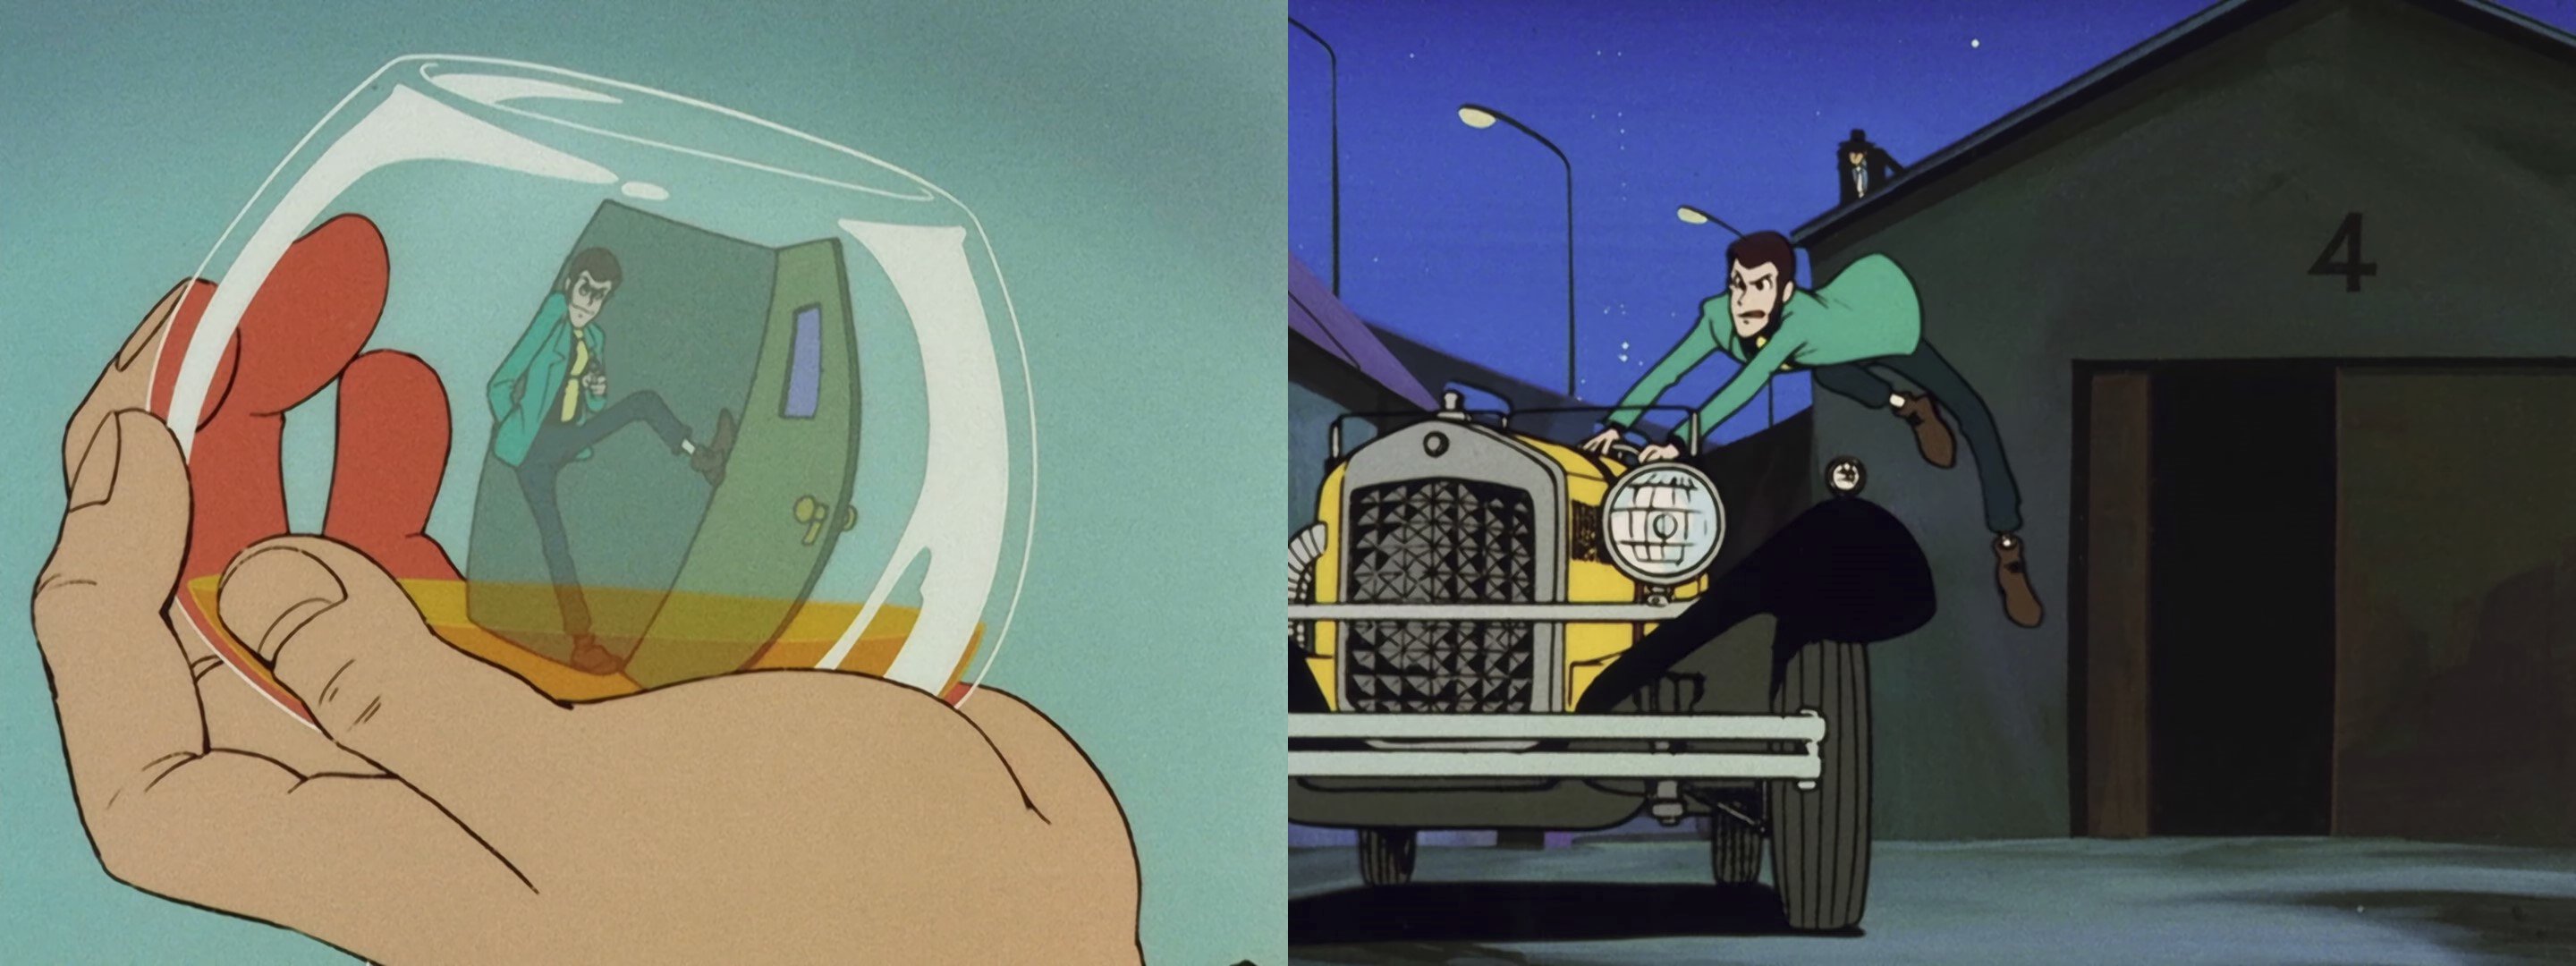 Due delle scene dell’episodio 9 probabilmente animate da Miyazaki. Entrambe scene d’azione ricche di inventiva e dinamismo che, nonostante il tratto più morbido, non inficiano sui toni drammatici della seconda metà dell’episodio.